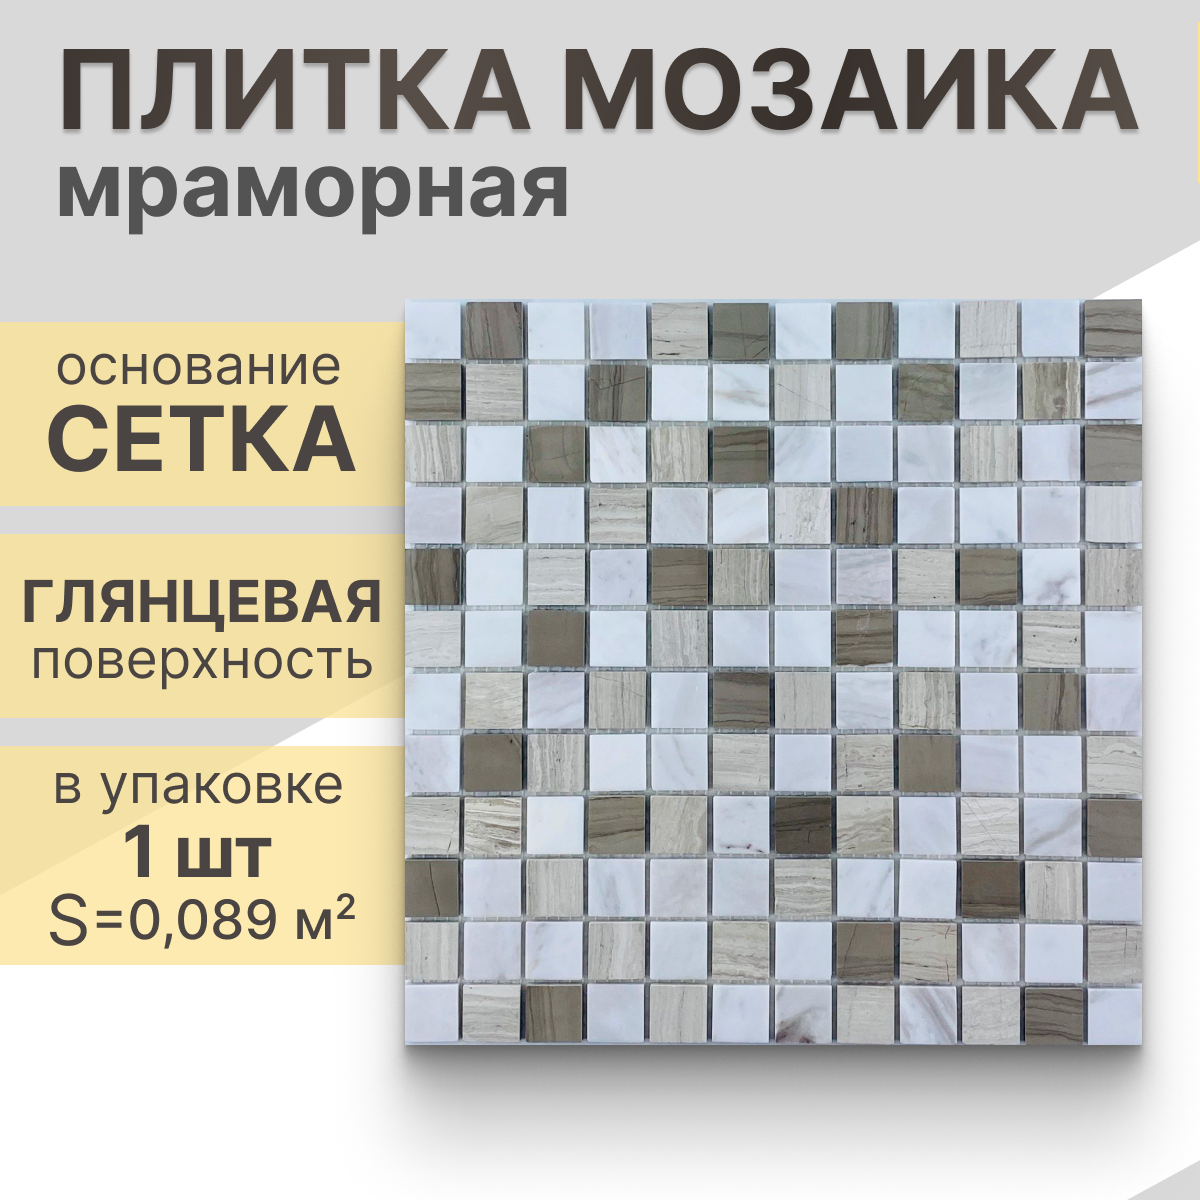 Мозаика (мрамор) NS mosaic Kp-745 29,8x29,8 см 1 шт (0,089 м²)